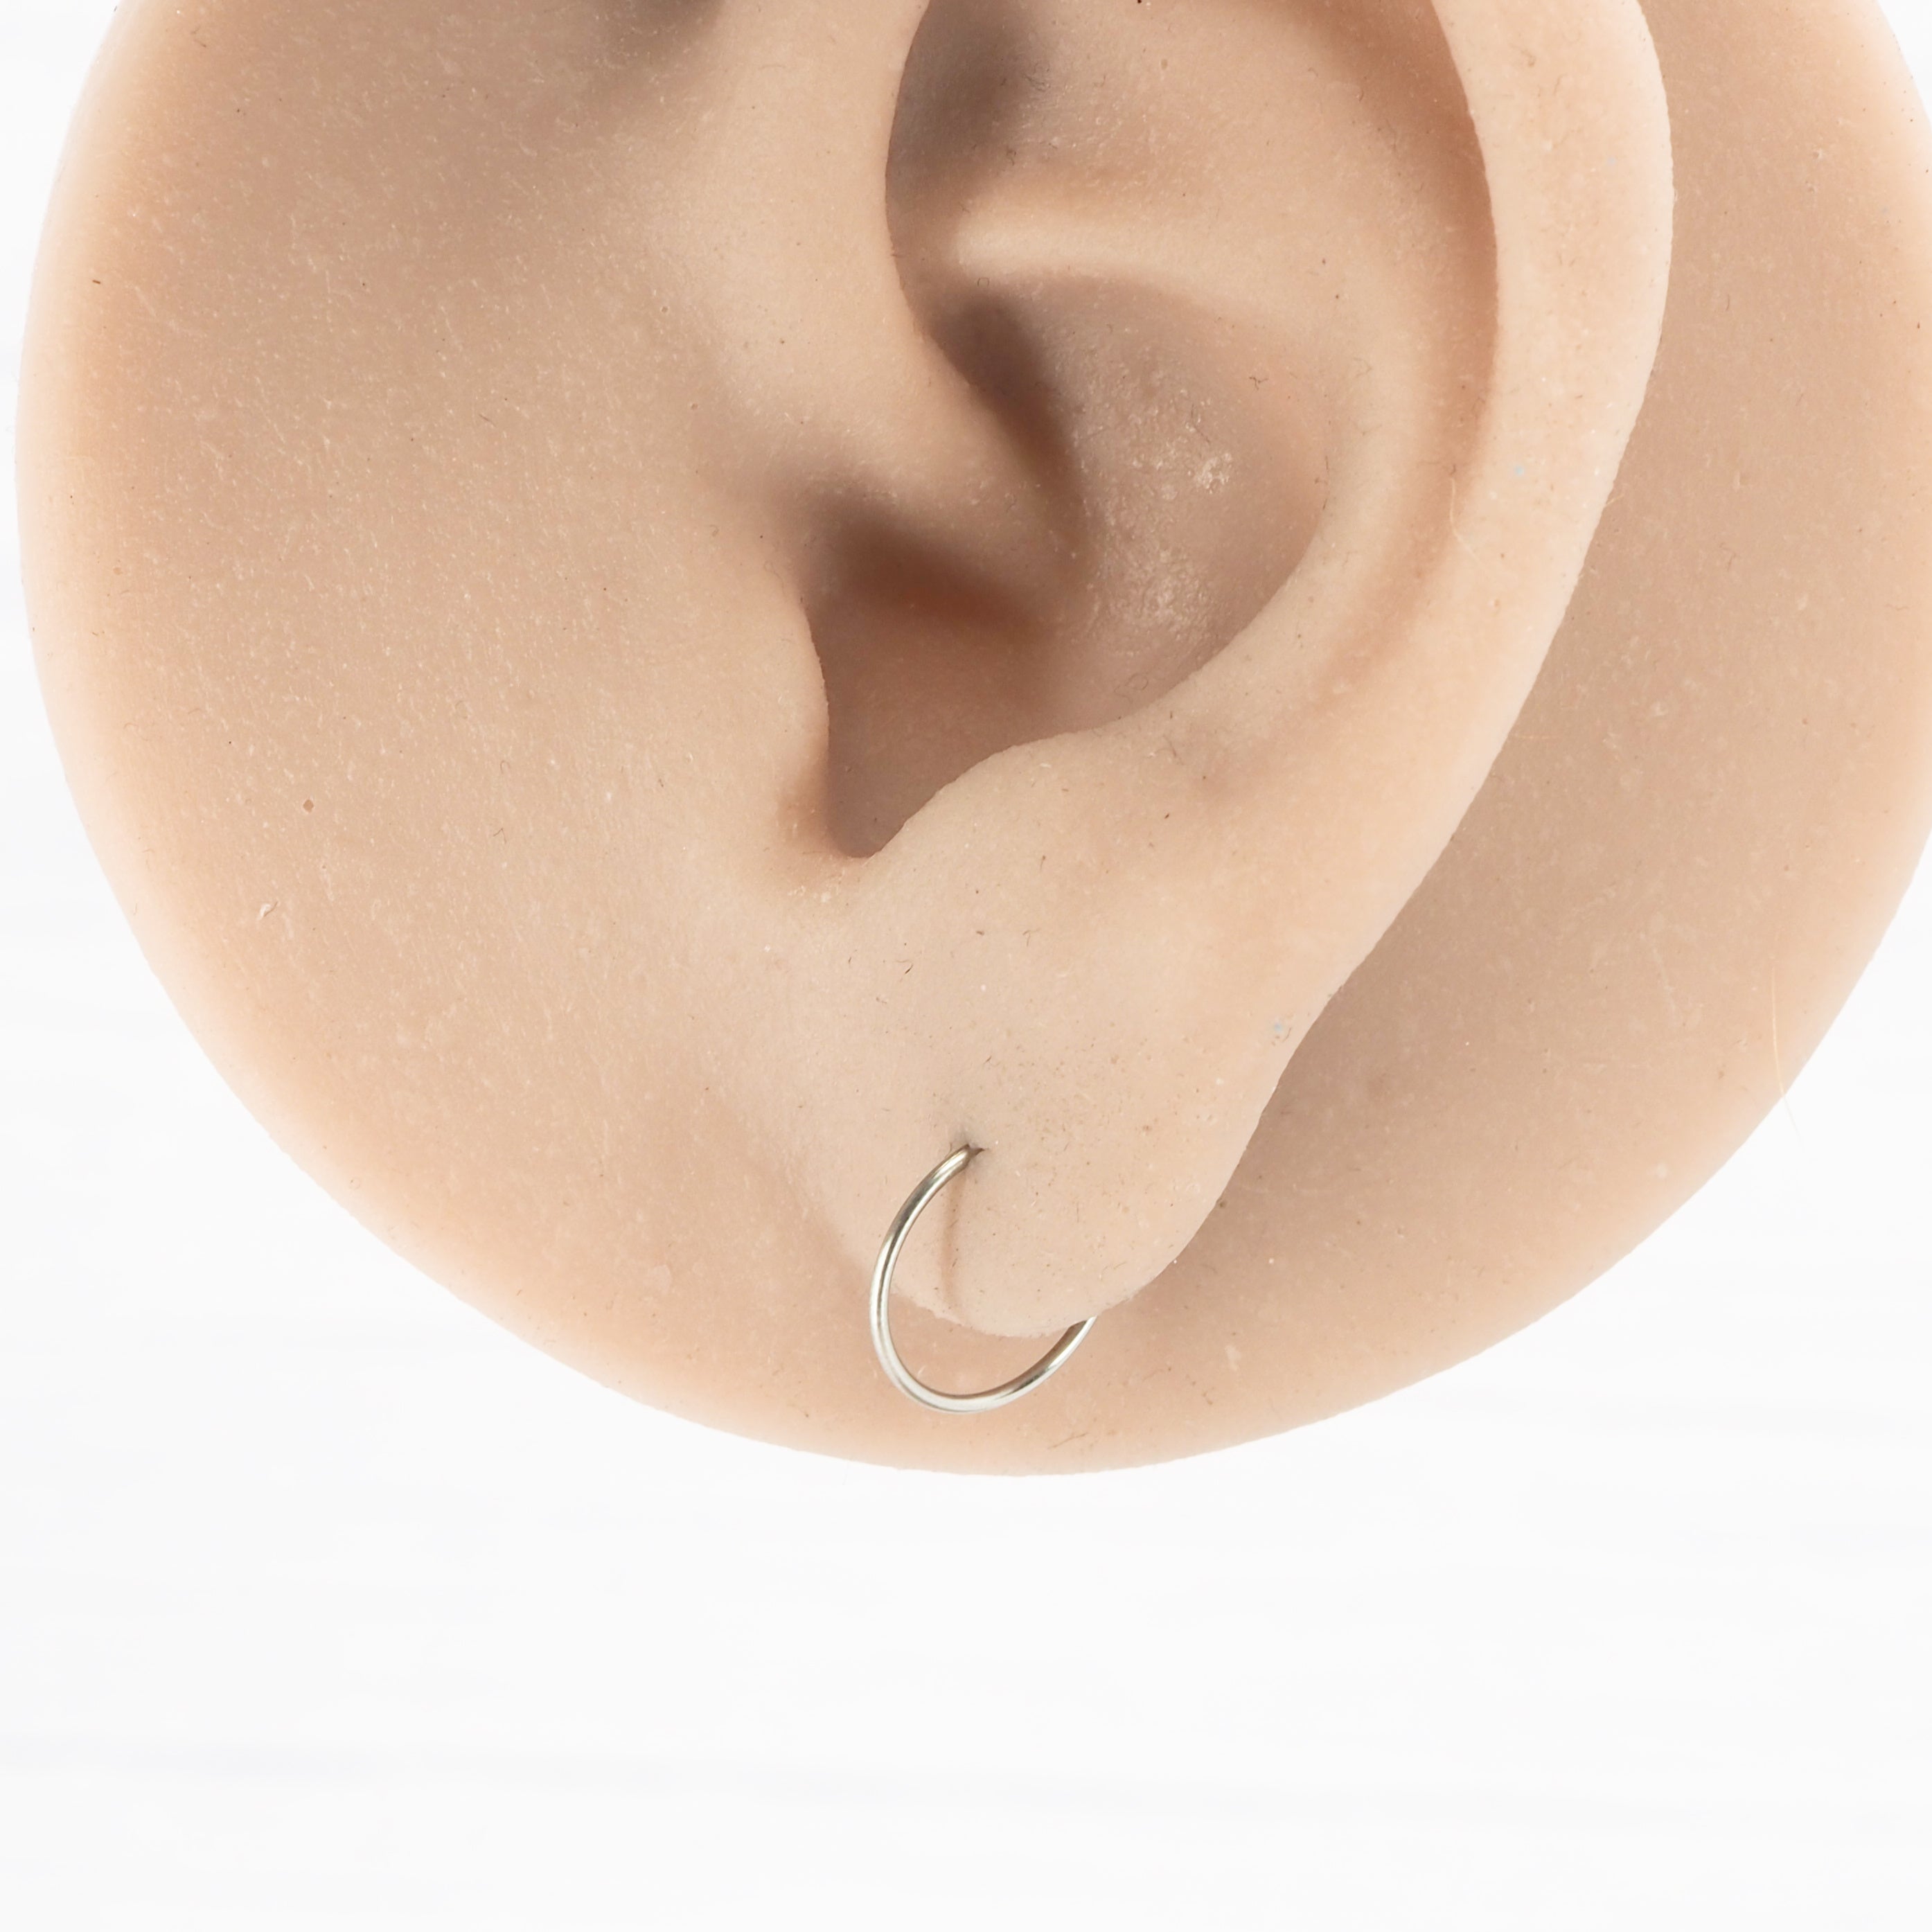 Small Titanium Hoop Earrings | TouchTitanium.com